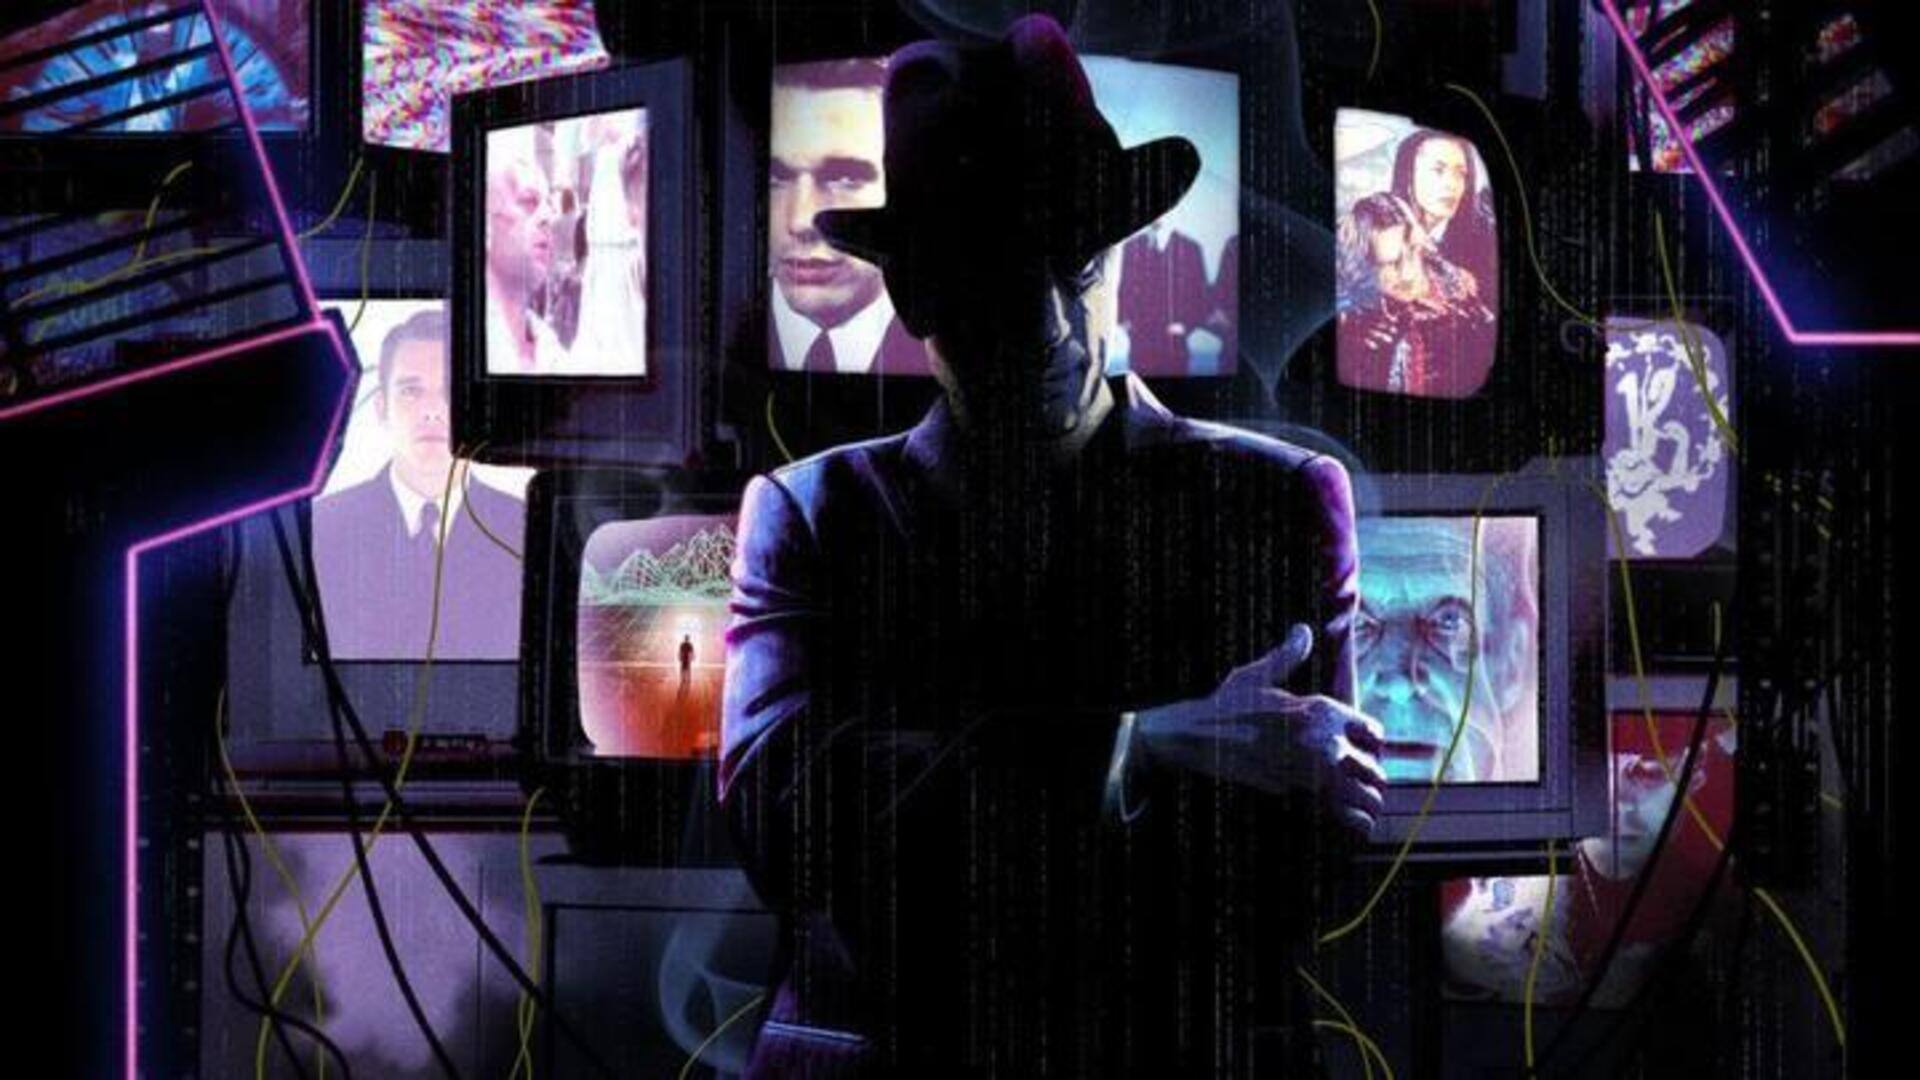 Mengungkap Misteri Tech-Noir: Sederet Film Terbaik Yang Layak Untuk Ditonton